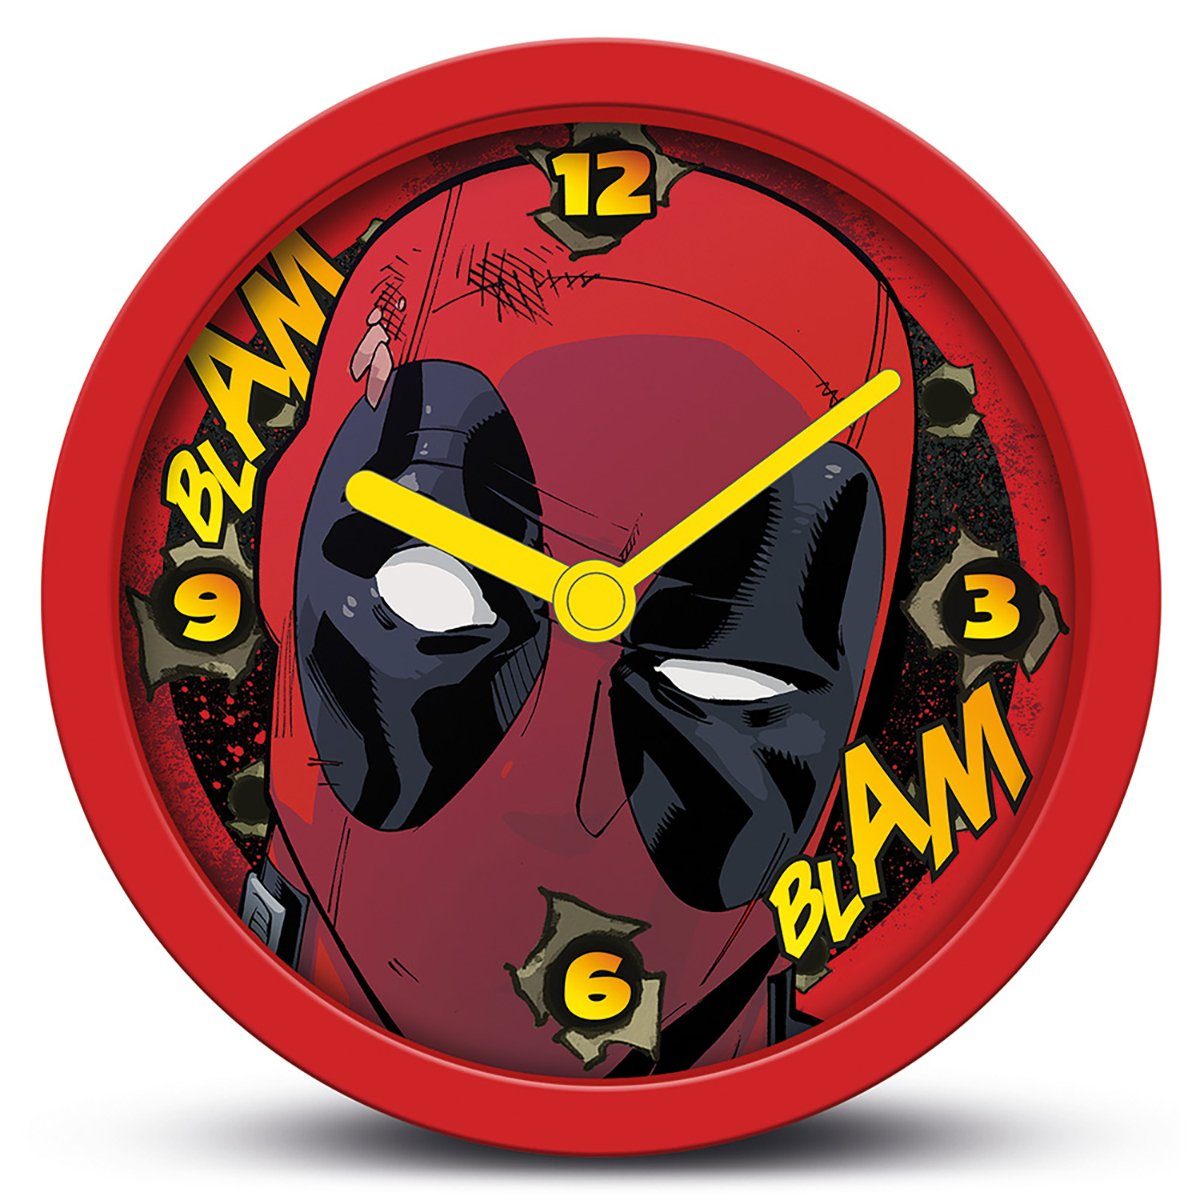 Tischuhr Blam Uhr Deadpool Marvel PYRAMID Blam